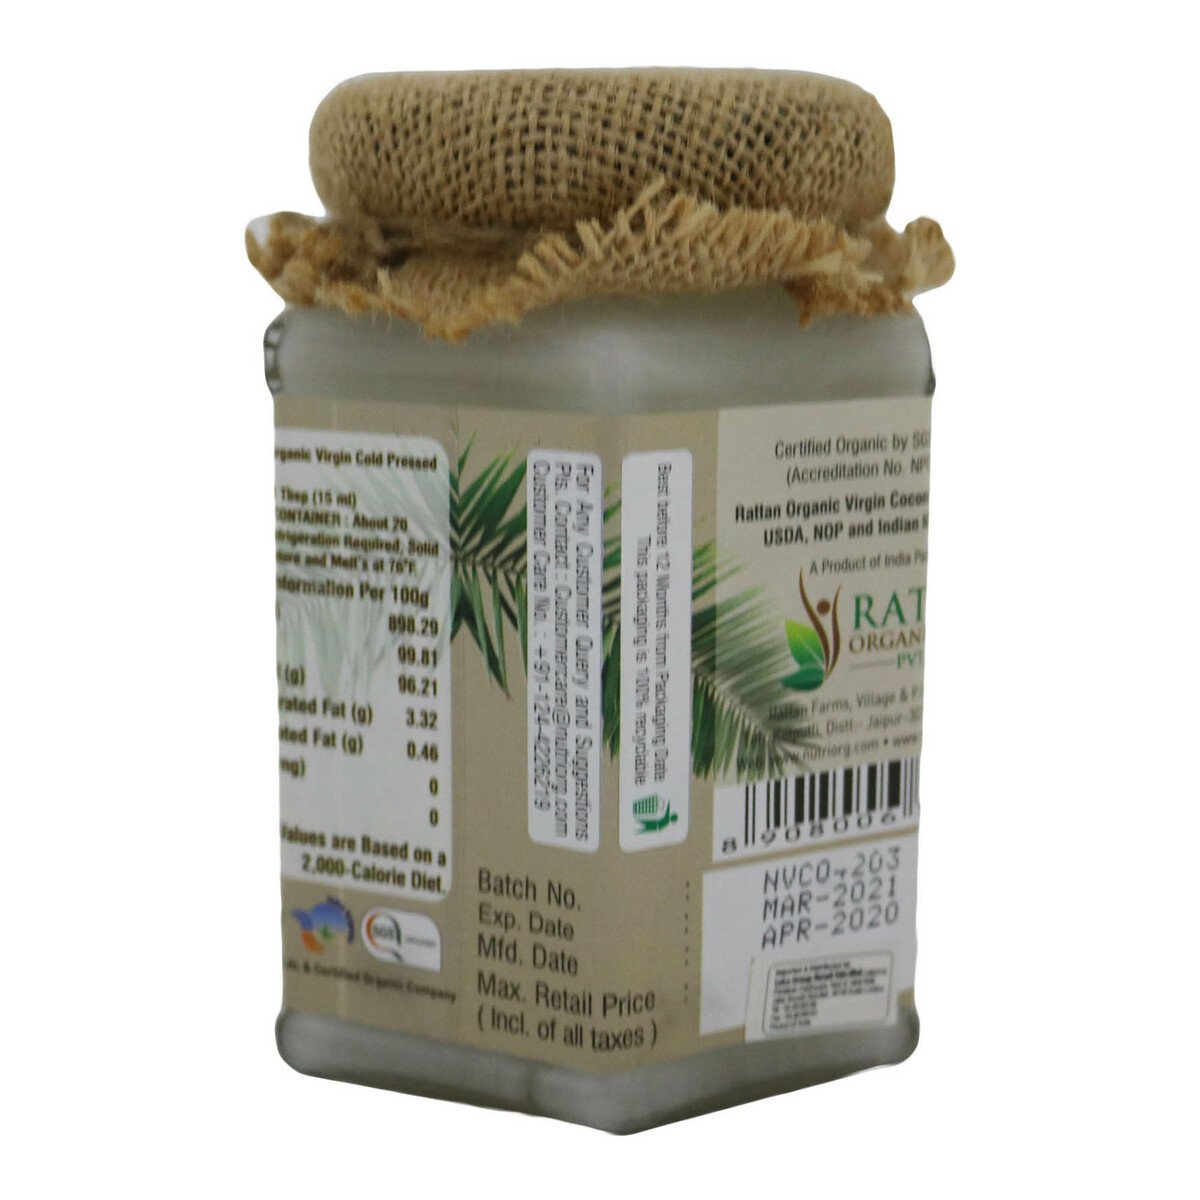 Nutriog Organic Virgin Coconut Oil 360ml